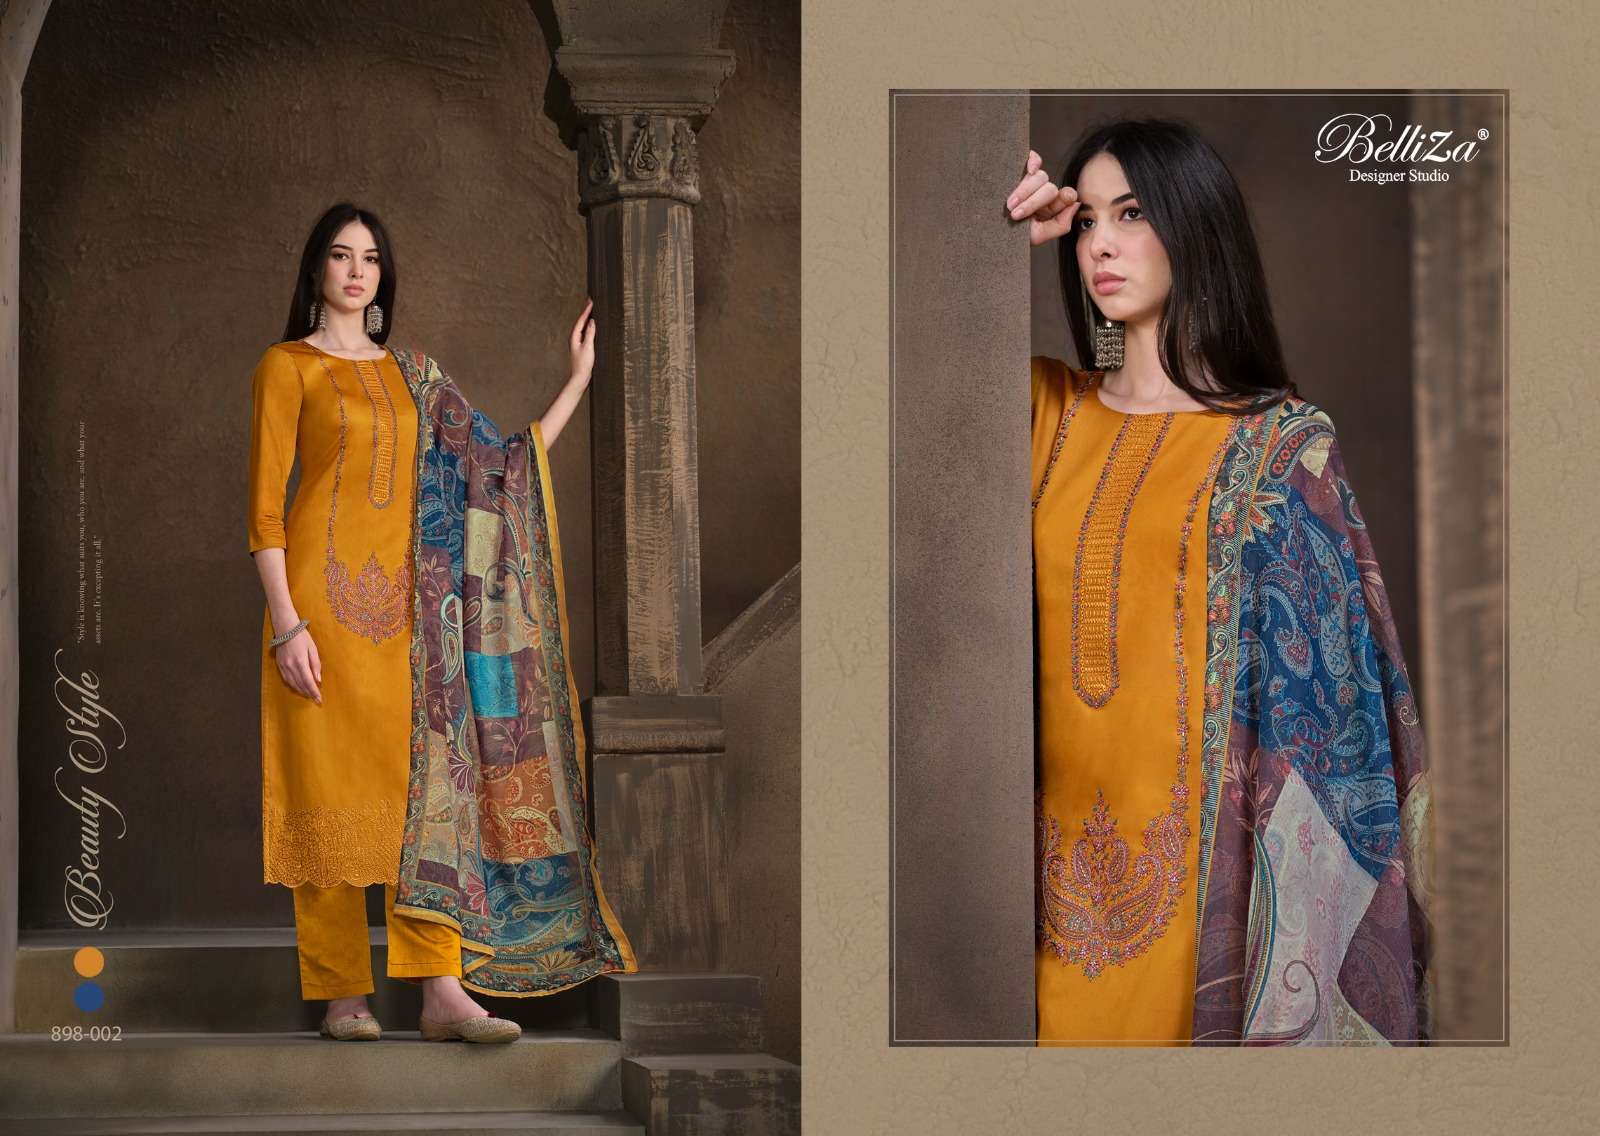 belliza designer studio jashn e ishq vol 4 embriderd heavy jam cotton exclusive look salwar suit catalog